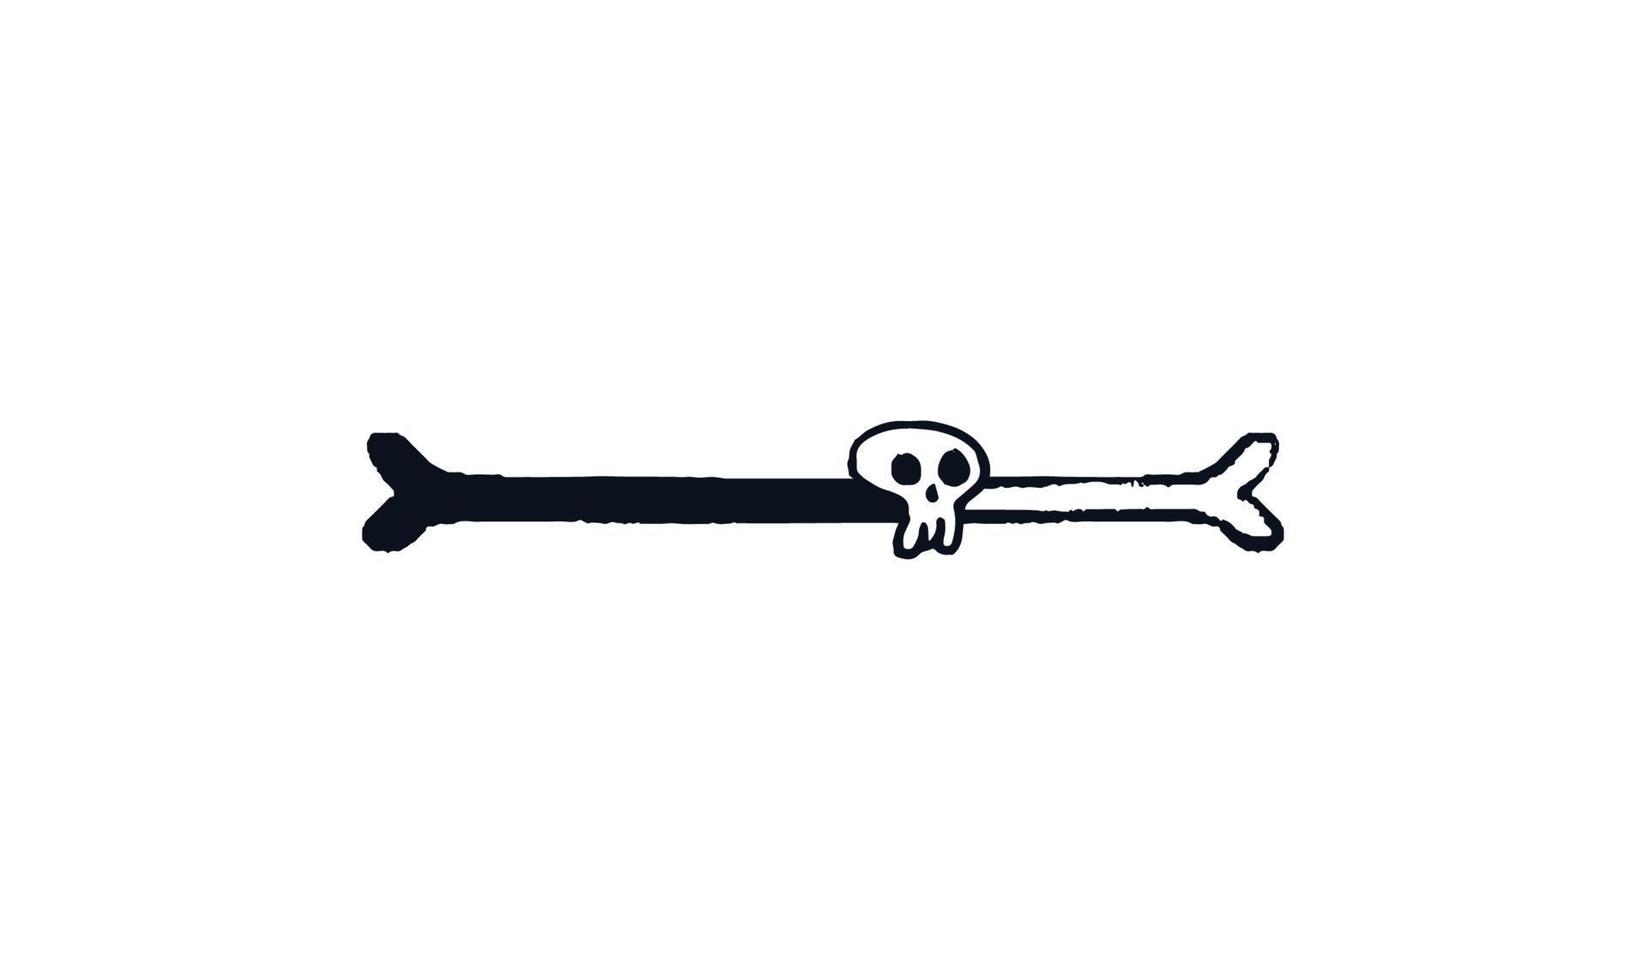 ldoodle barre de chargement d'os. barre de progression 70 pour cent d'os avec indicateur de téléchargement de doodle de crâne. illustration de stock de vecteur noir sur croquis blanc.